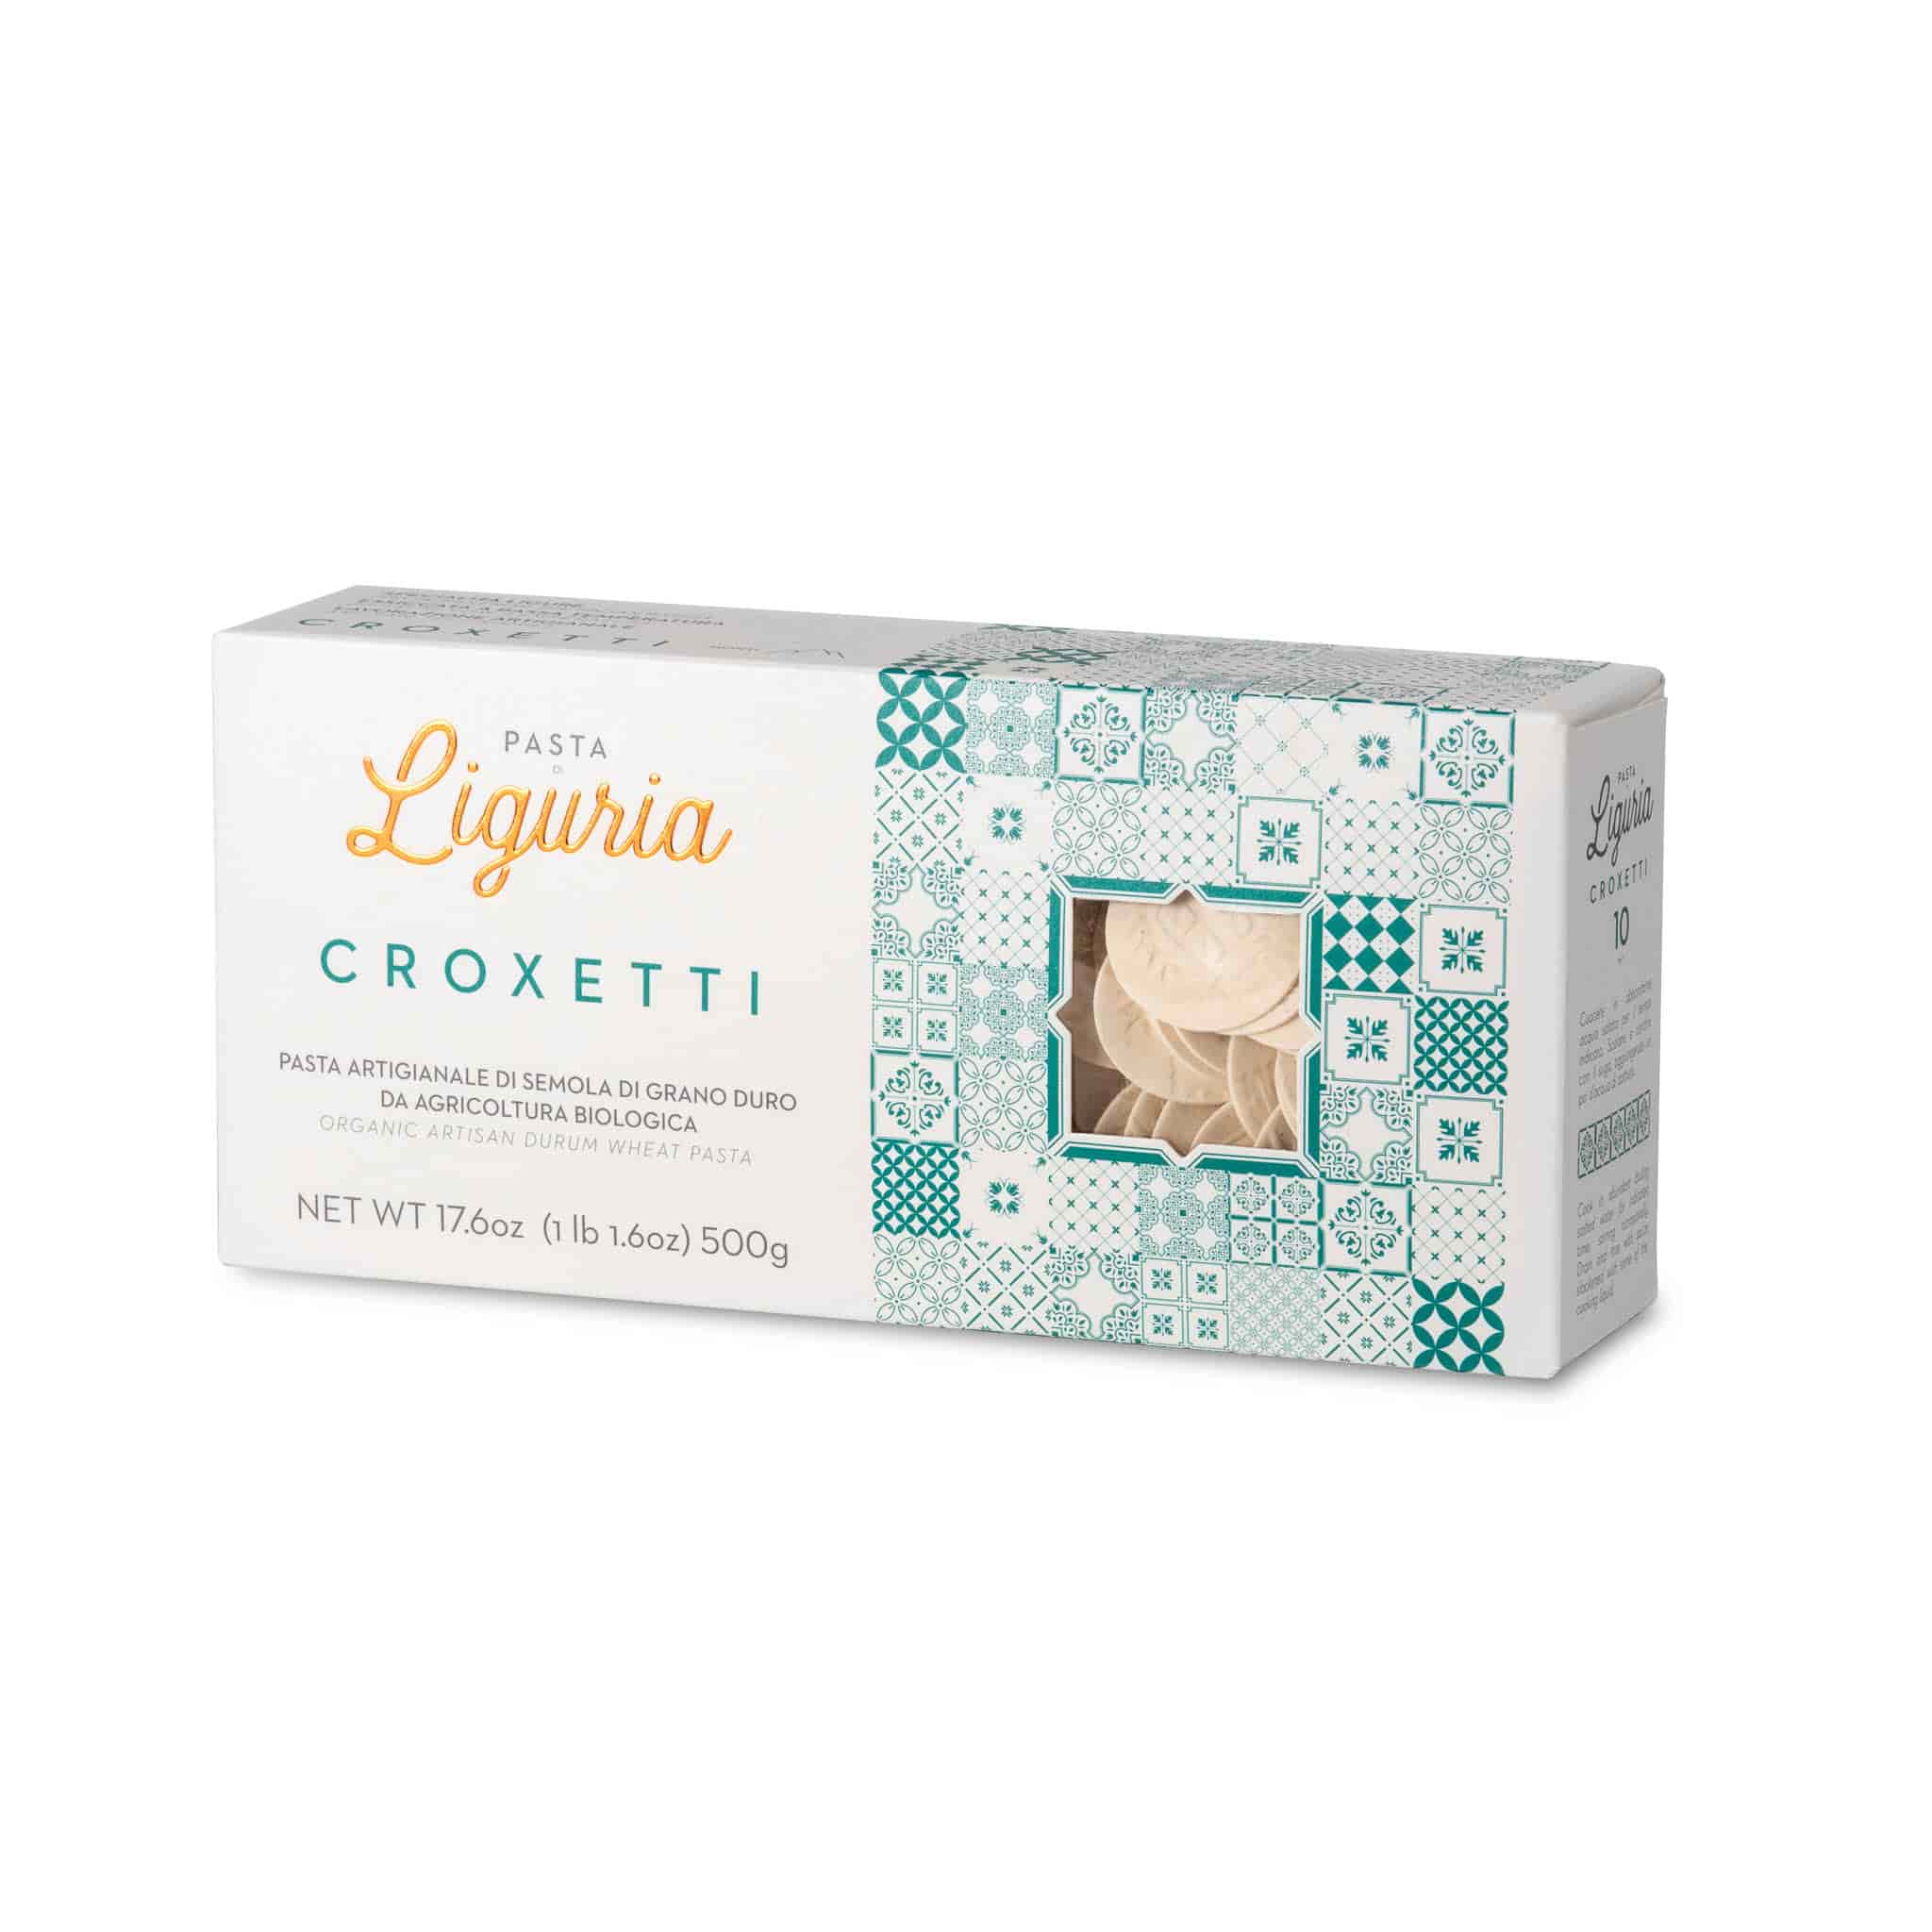 Pasta Liguria Croxetti, 500g